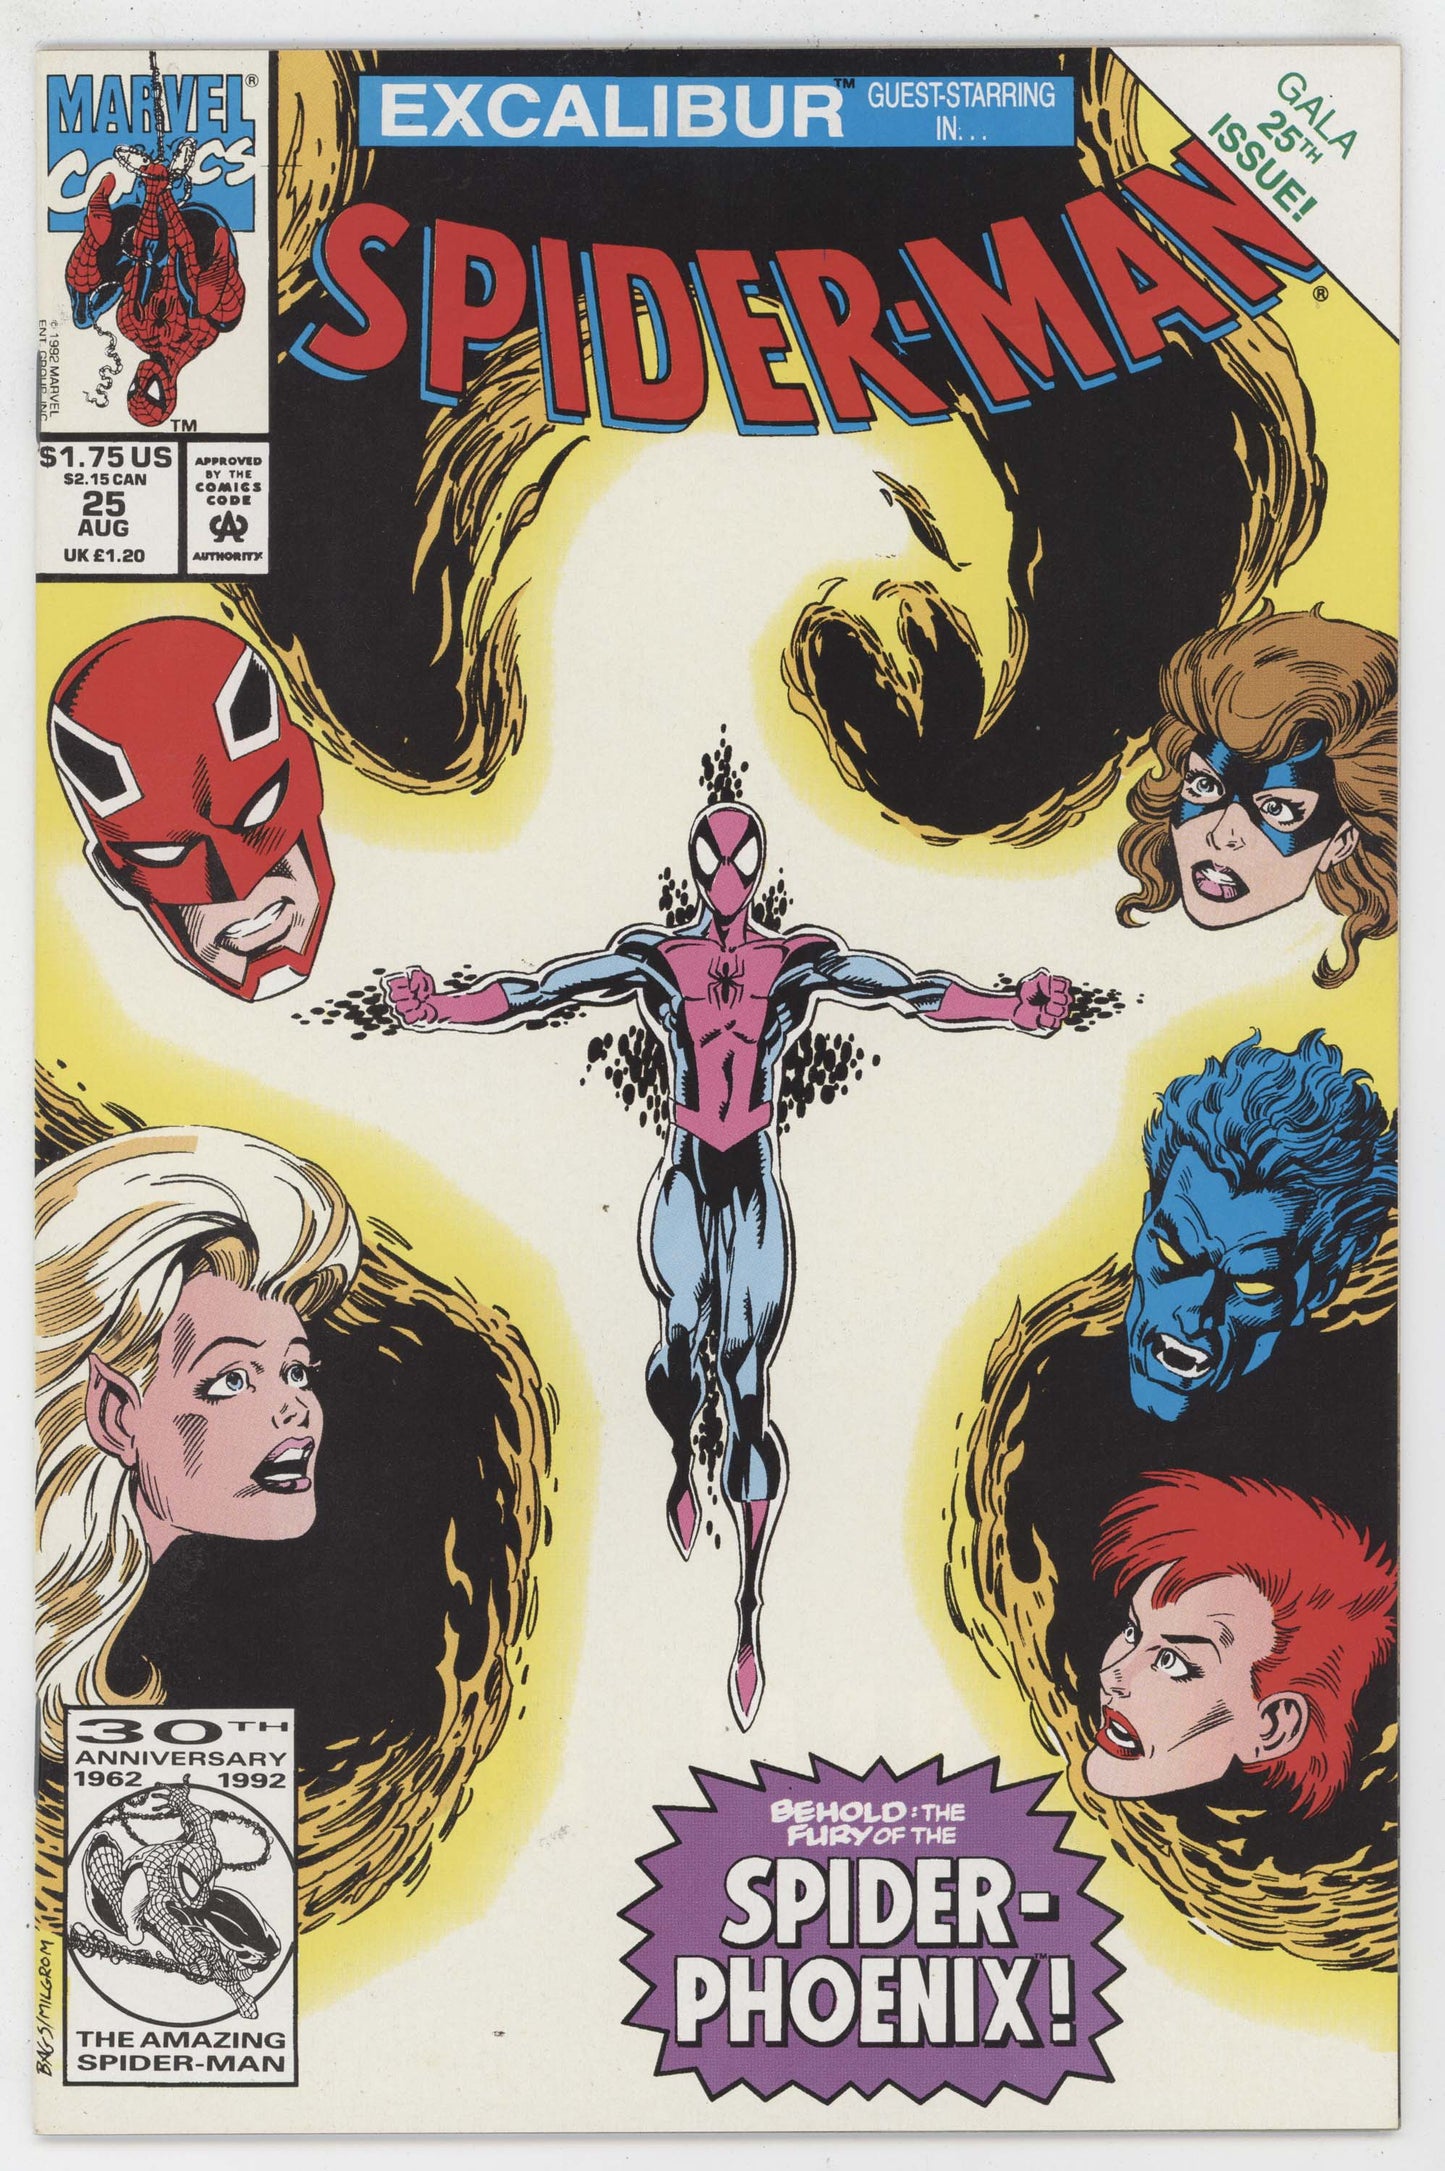 Spider-Man 25 Marvel 1992 NM Excalibur Spider-Phoenix Kitty Pryde Nightcrawler